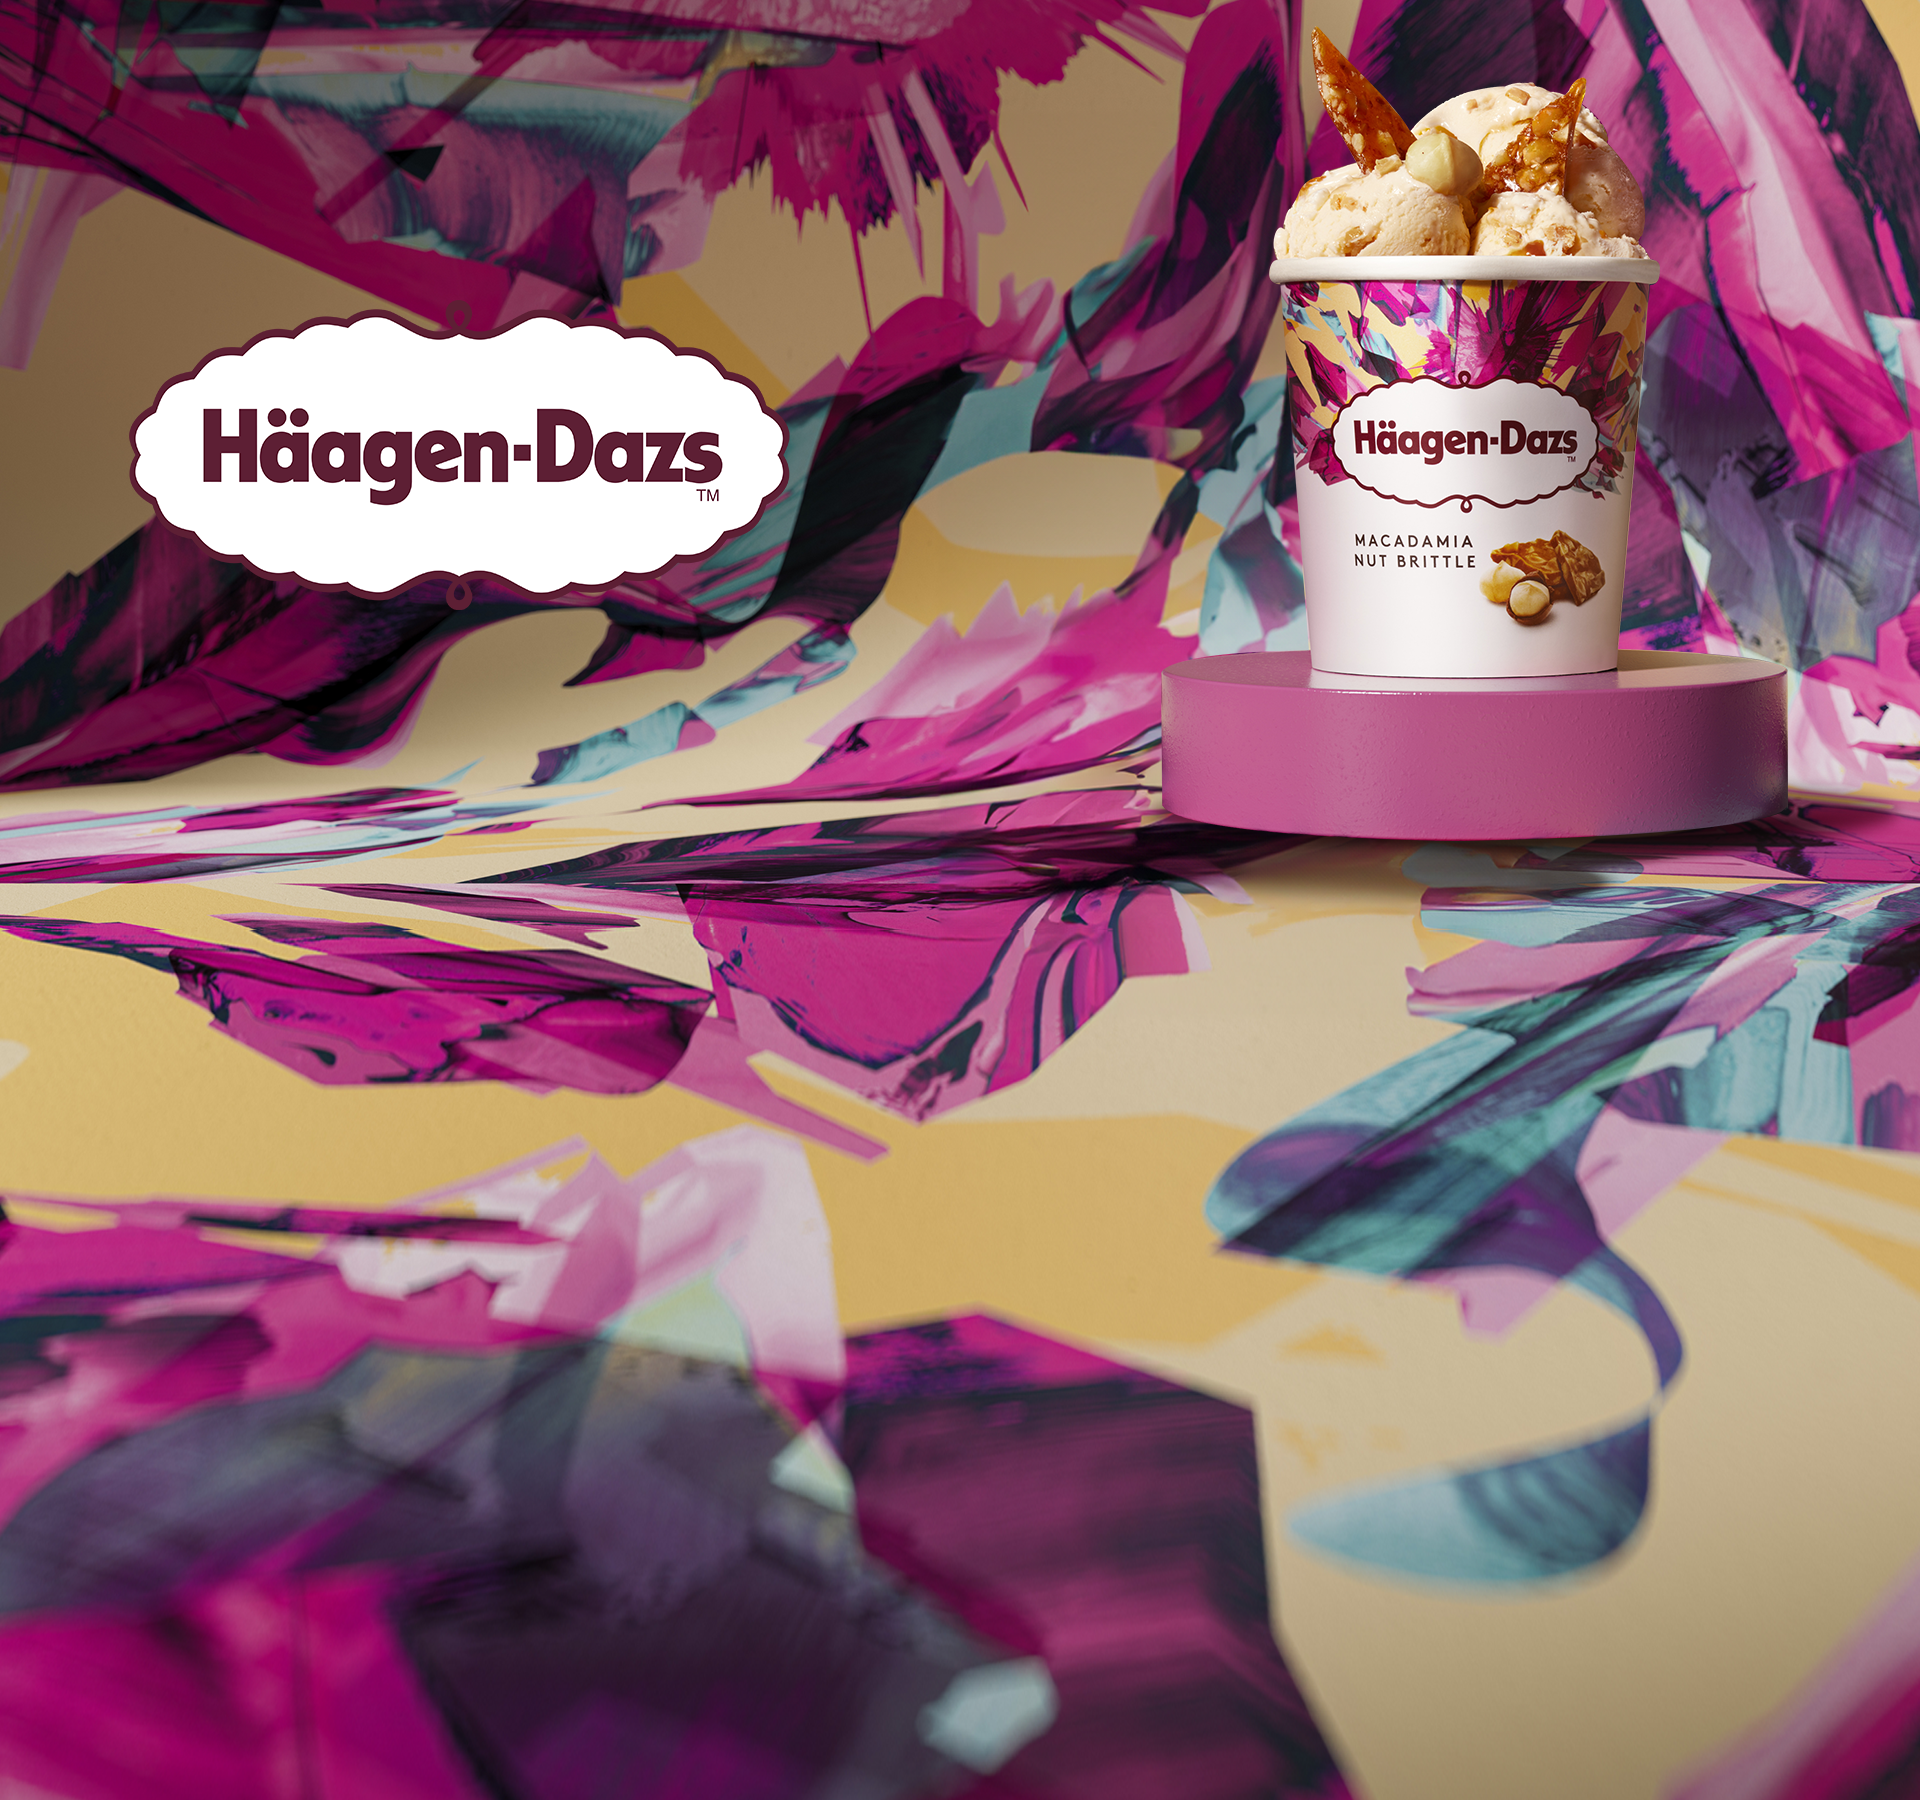 Partagez un moment frais et gourmand avec Häagen-Dazs!